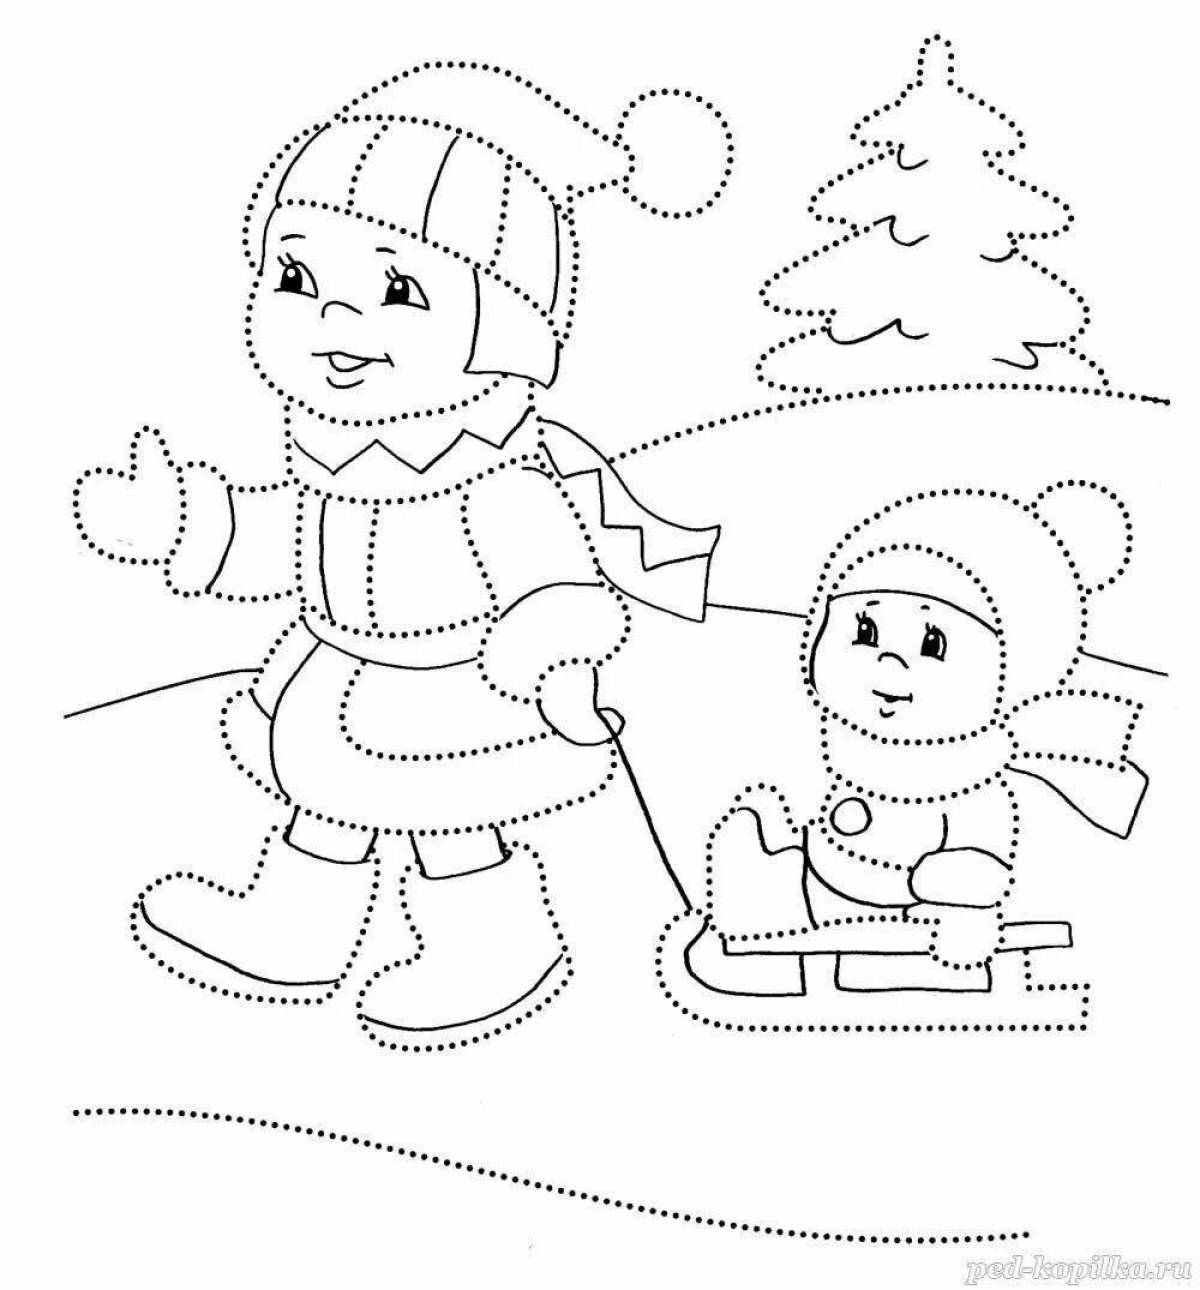 Festive winter coloring book